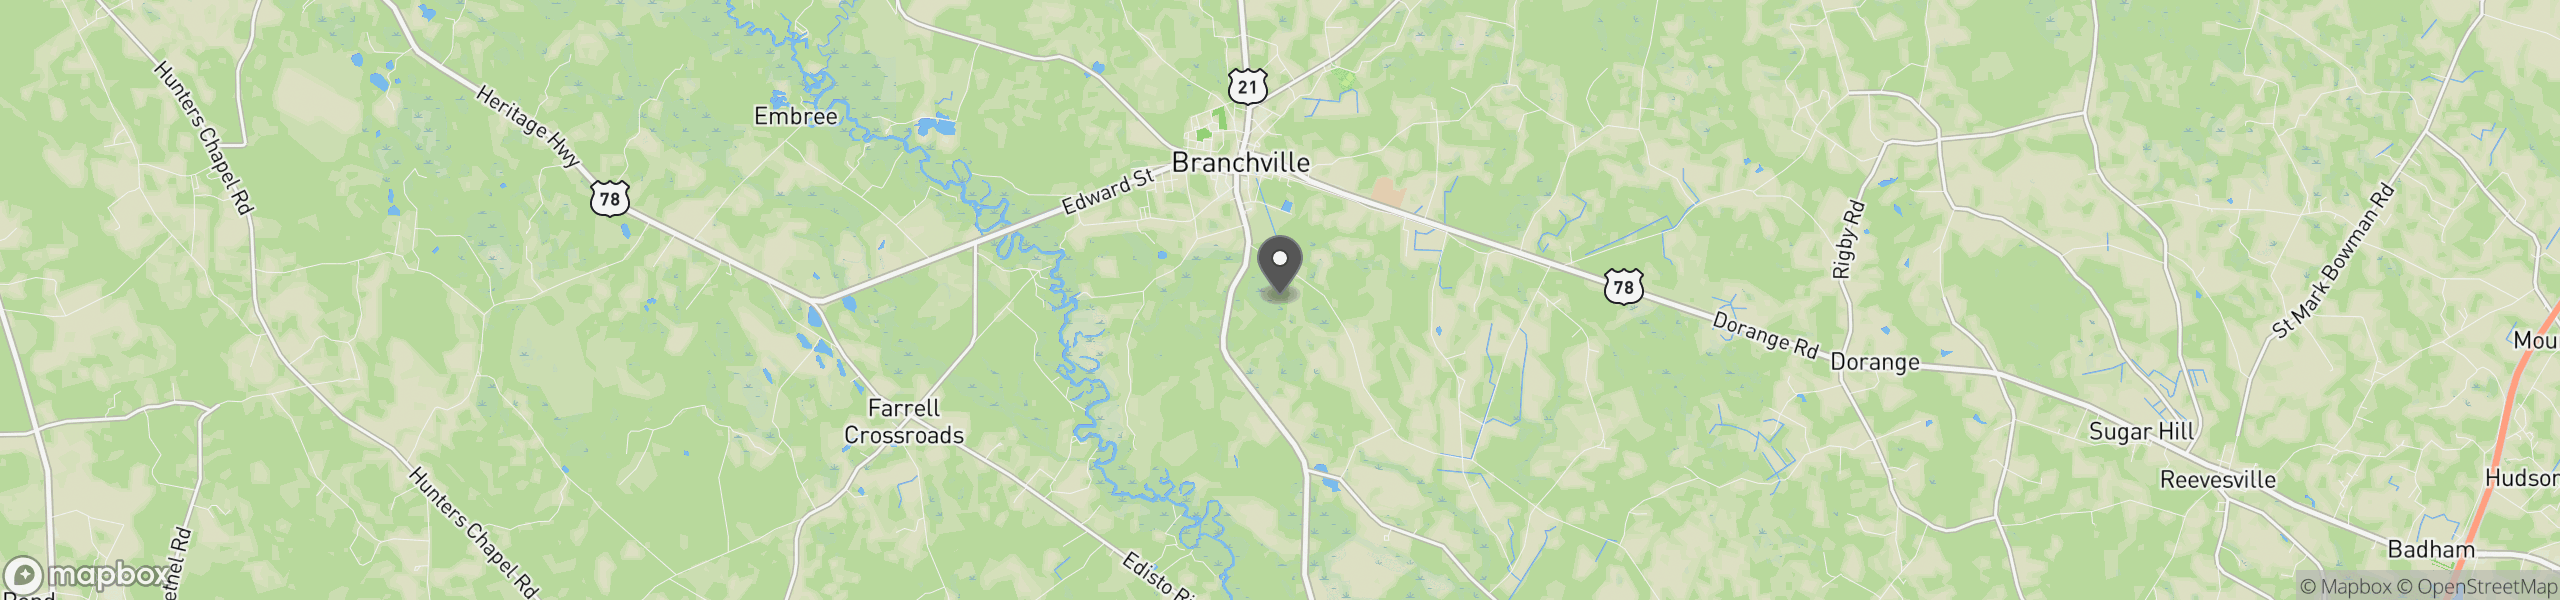 Branchville, SC 29432